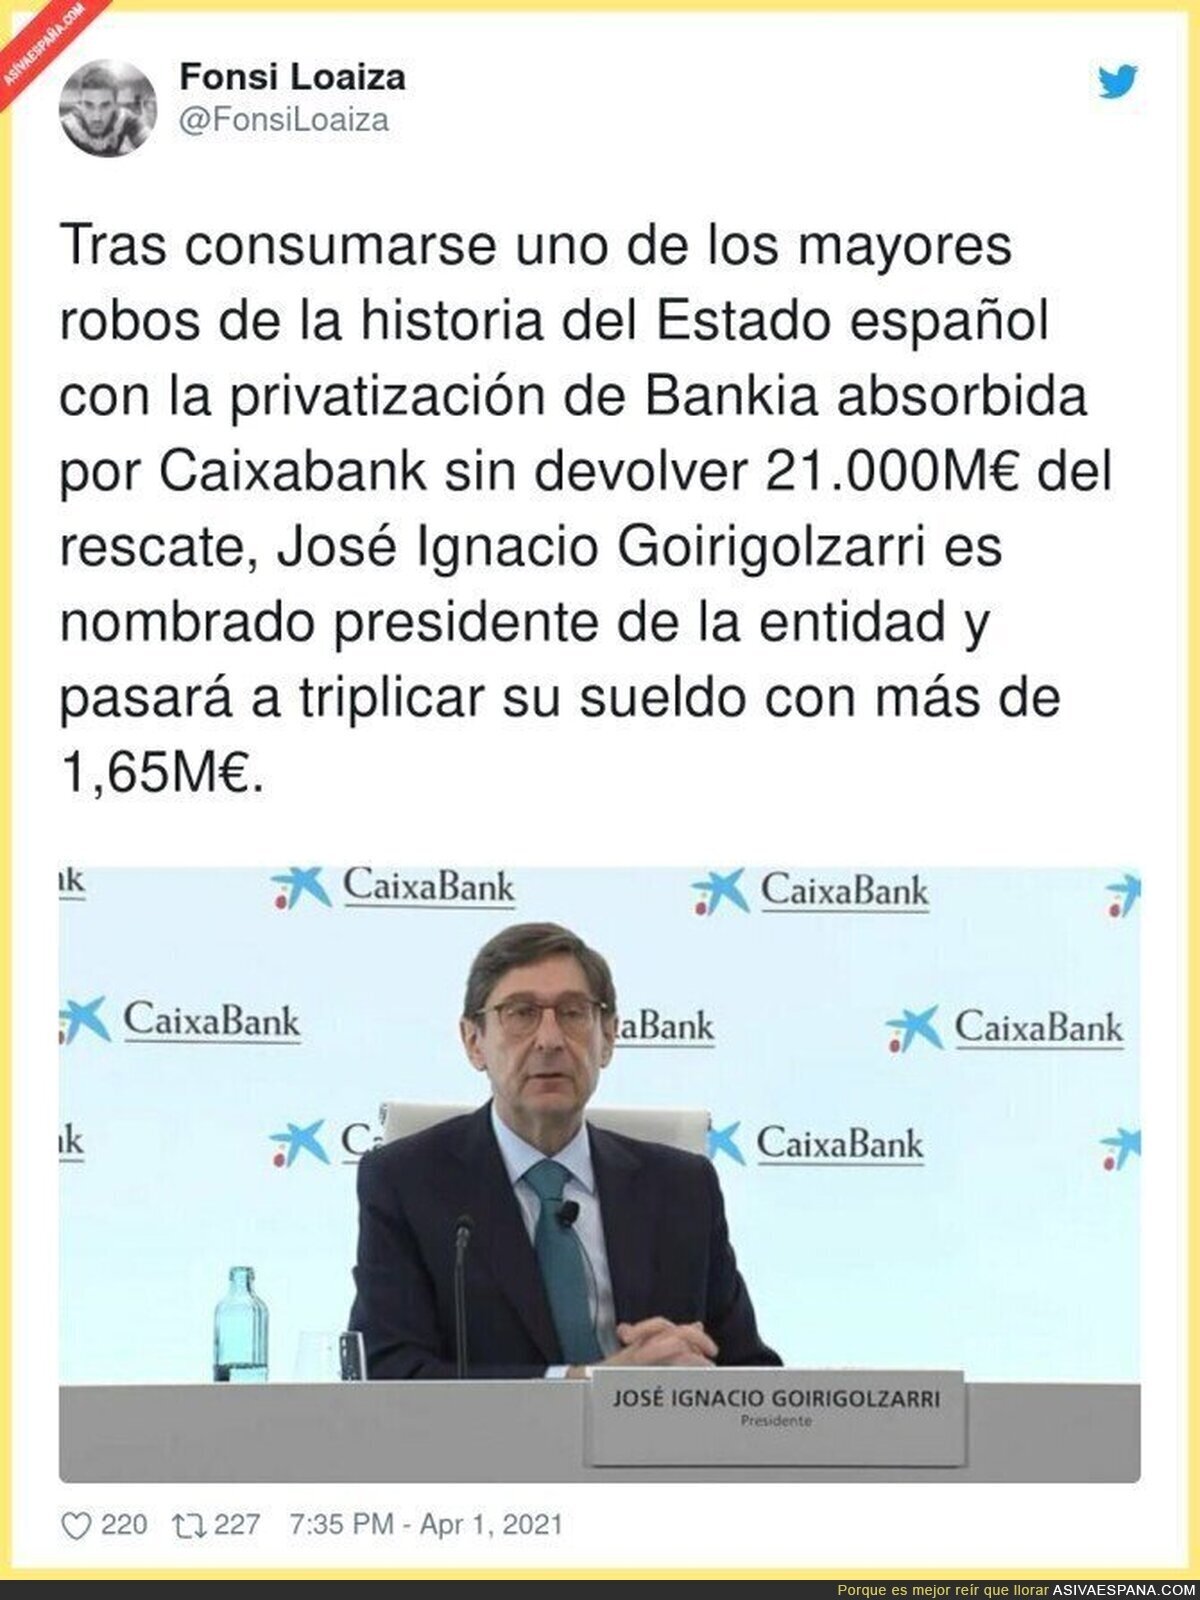 Empiezan a saberse cositas de la fusión Caixabank-Bankia